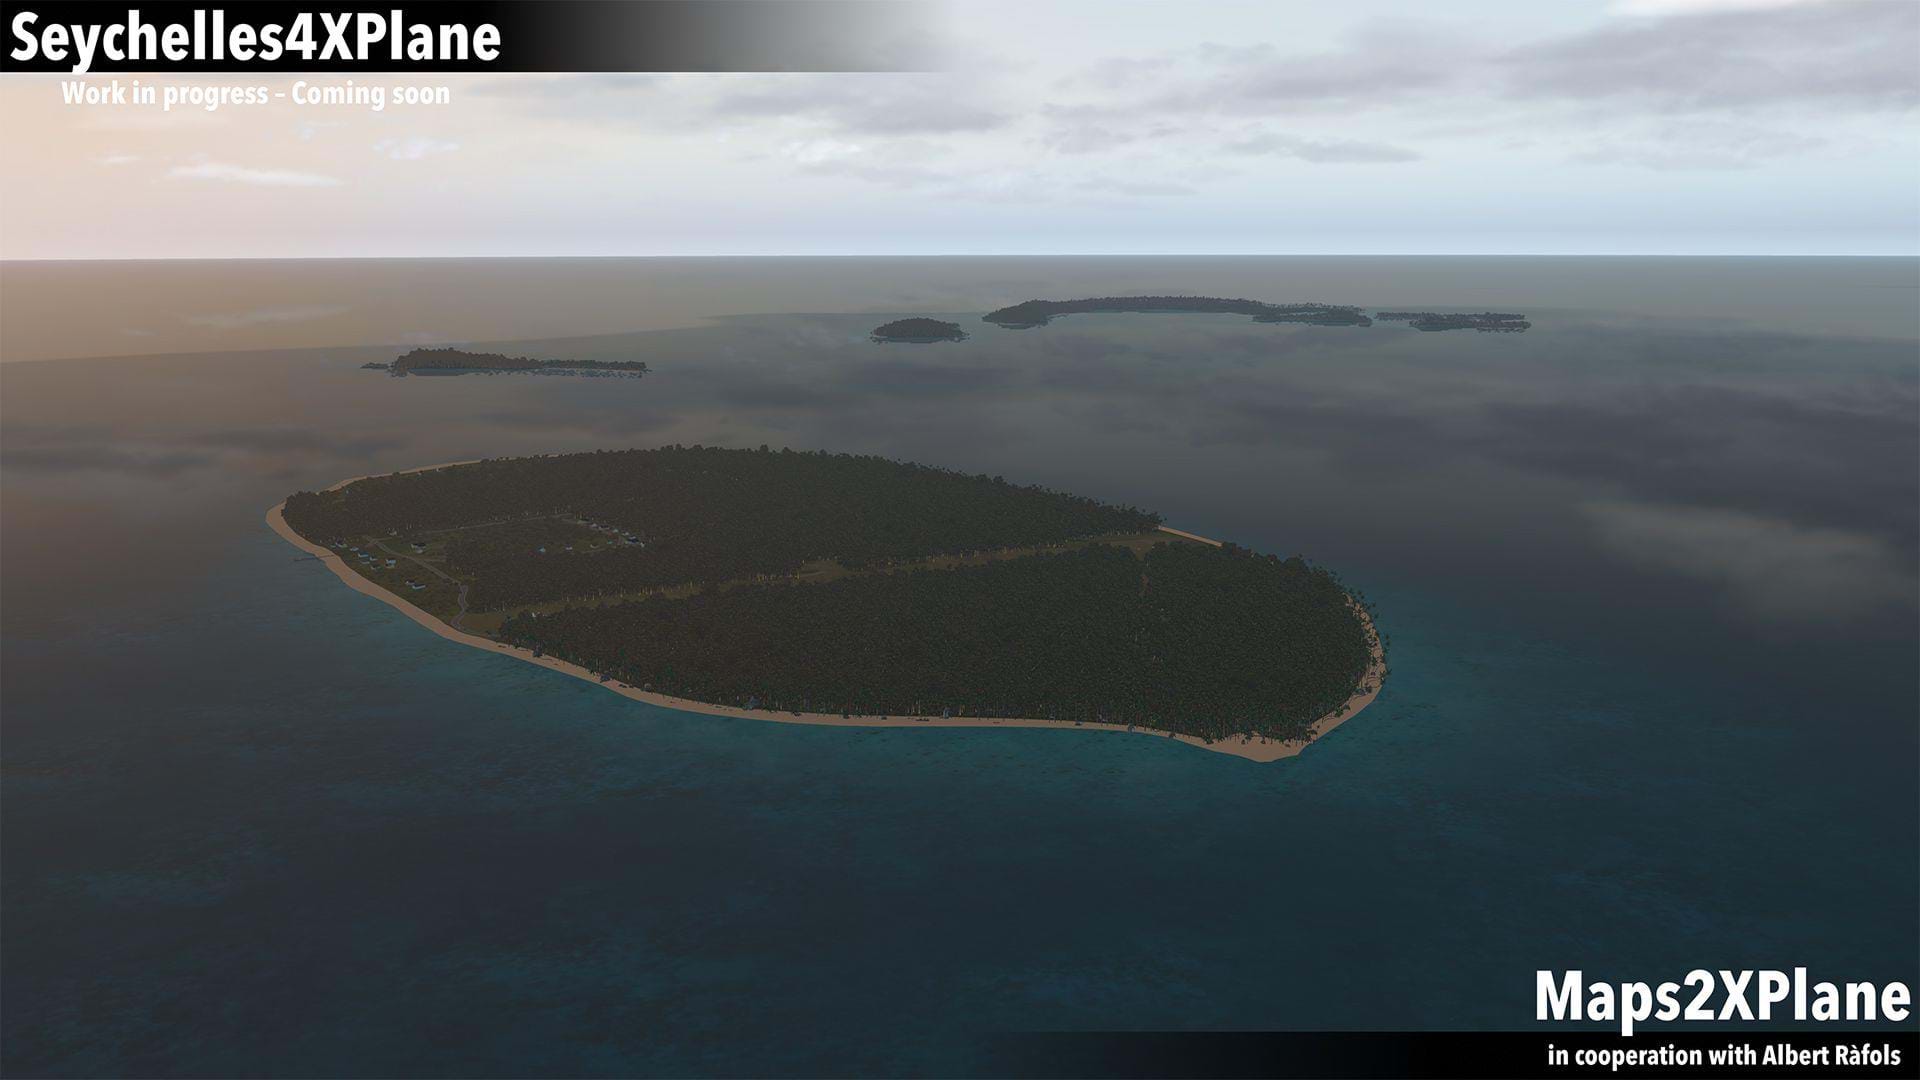 Maps2XPlane - Seychelles4XPlane